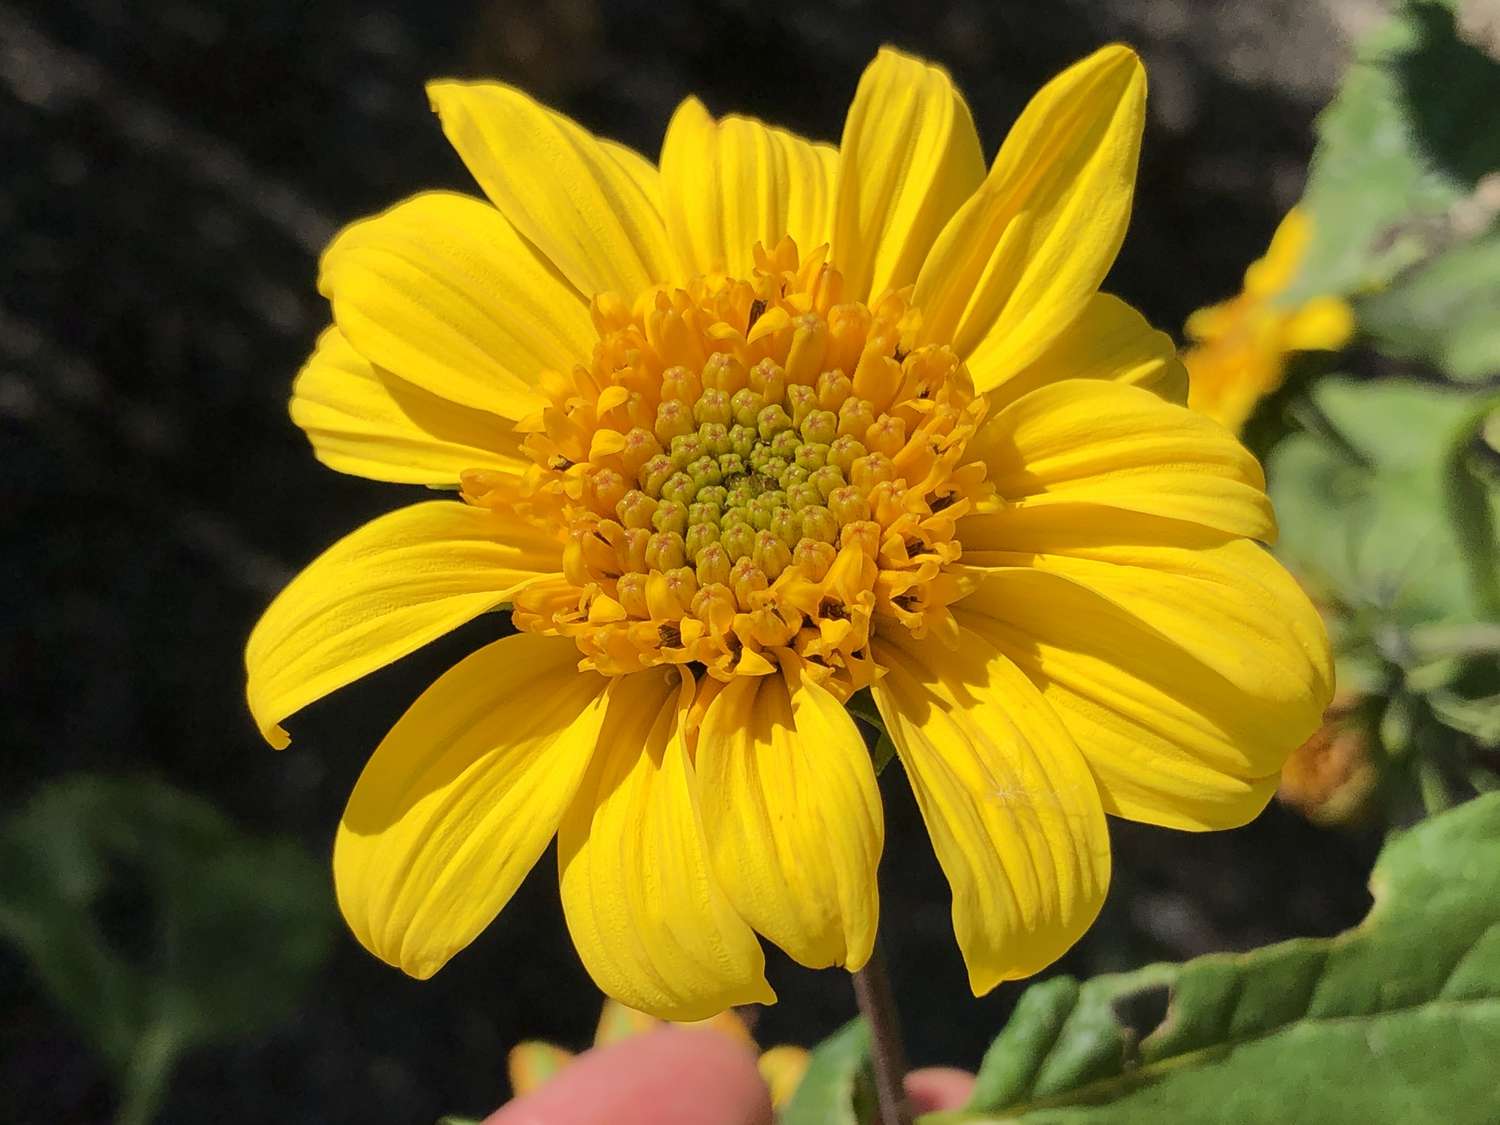 Leuchtend gelbe Sonnenblume mit gänseblümchenartigen Blütenblättern und gelber Mitte